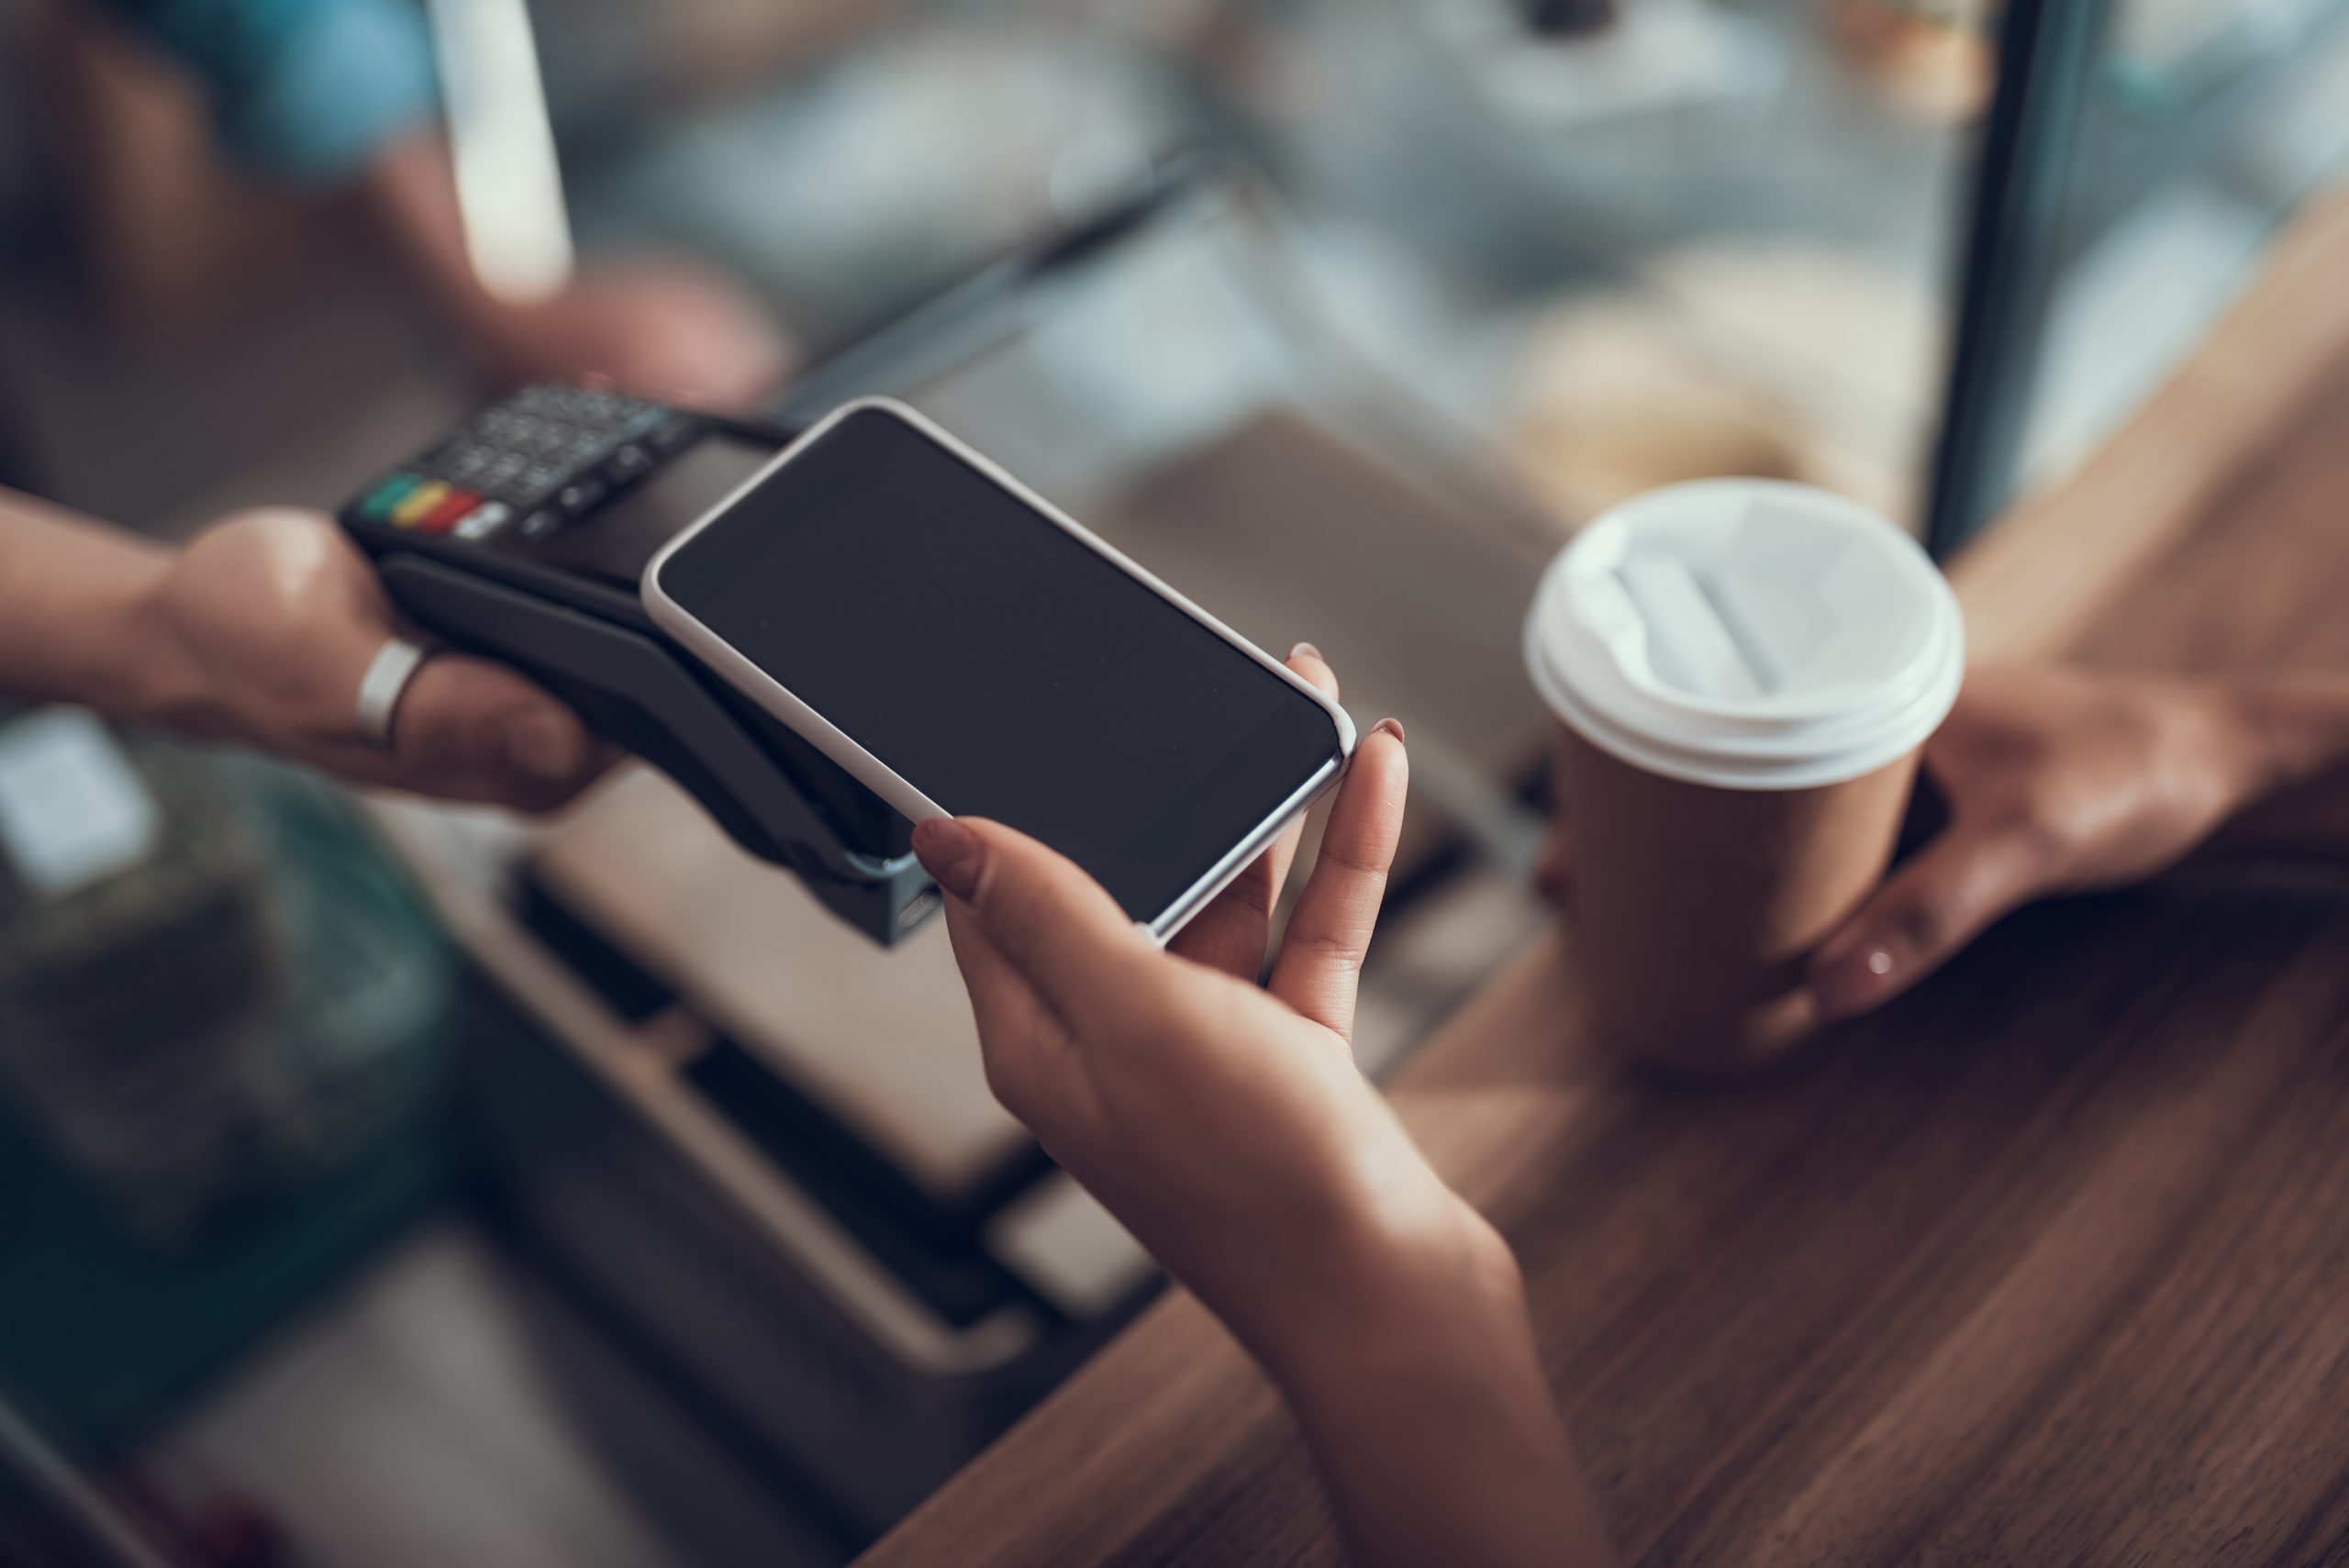 Des mains féminines tenant un smartphone au-dessus de la machine de paiement par carte de crédit tout en utilisant le système de paiement sans contact